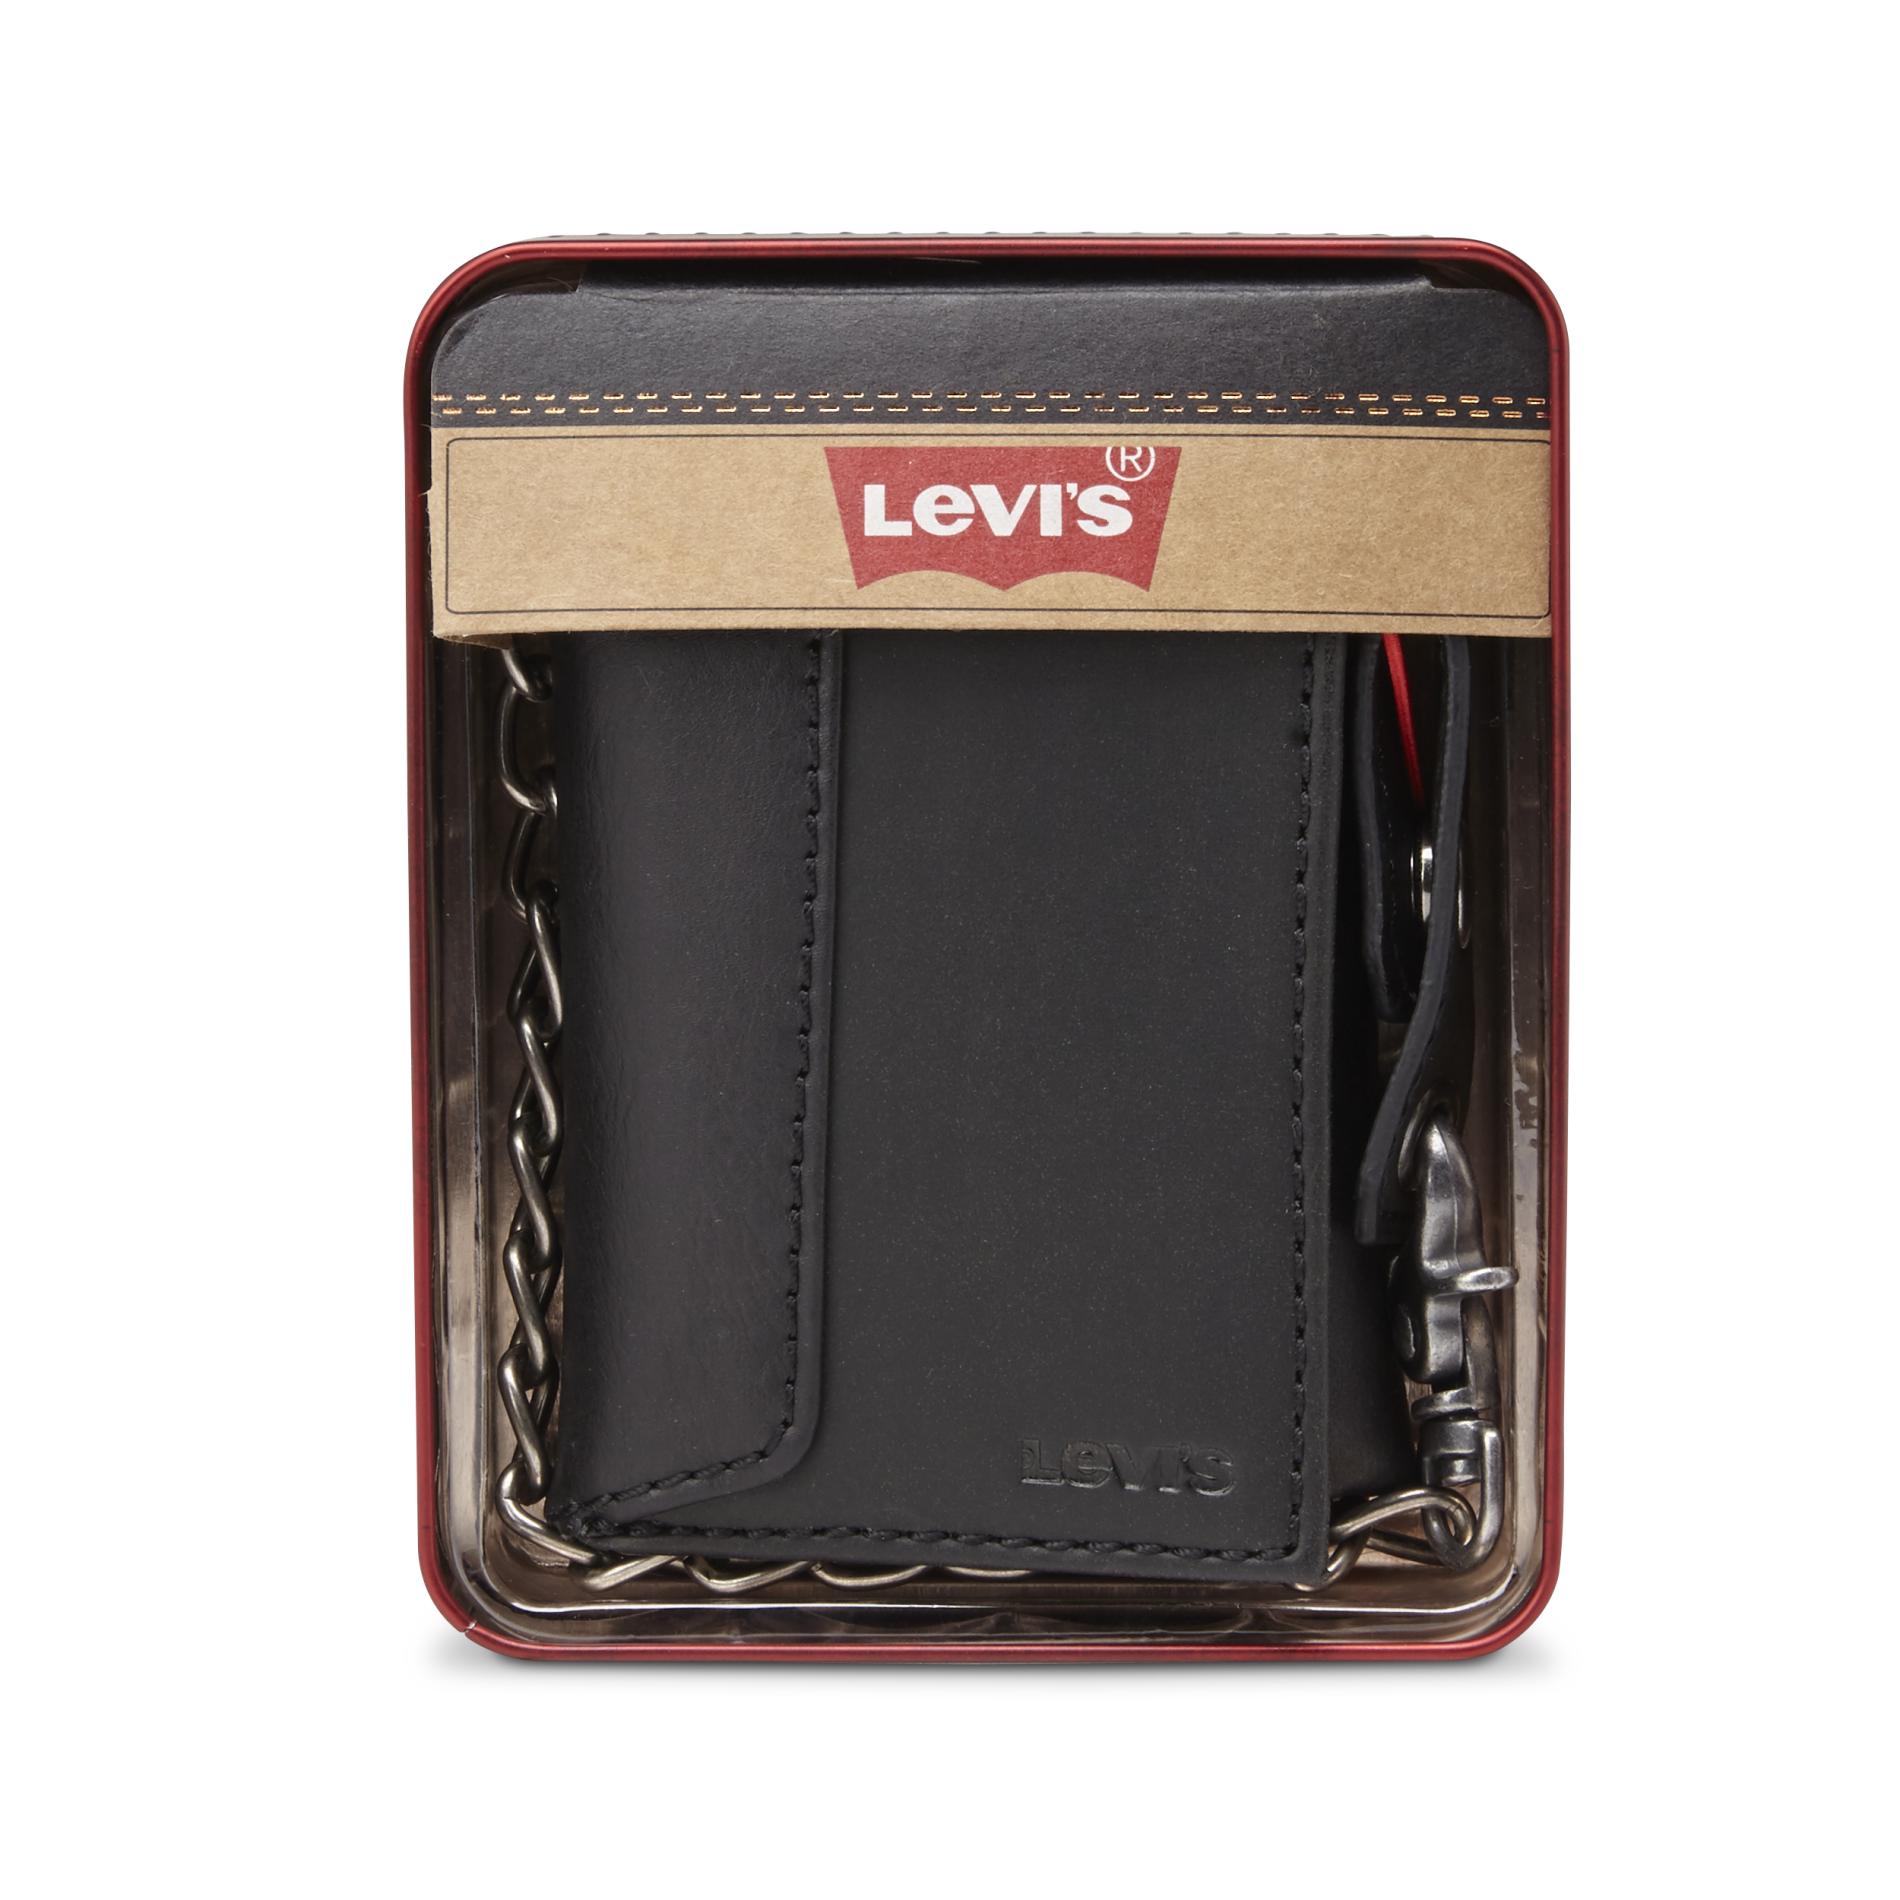 original levi's leather wallet